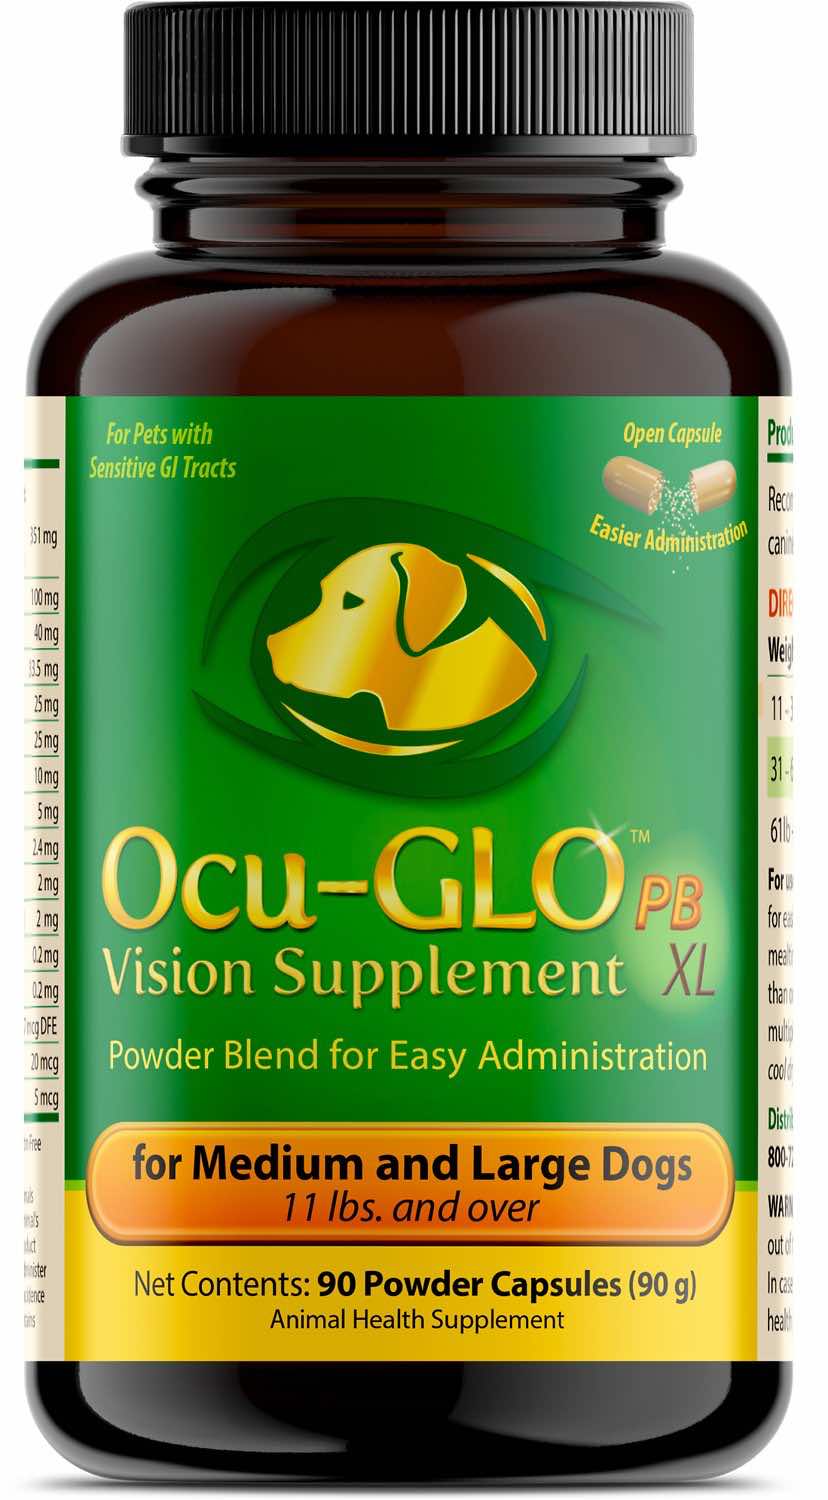 Ocu-GLO Powder Blend XL